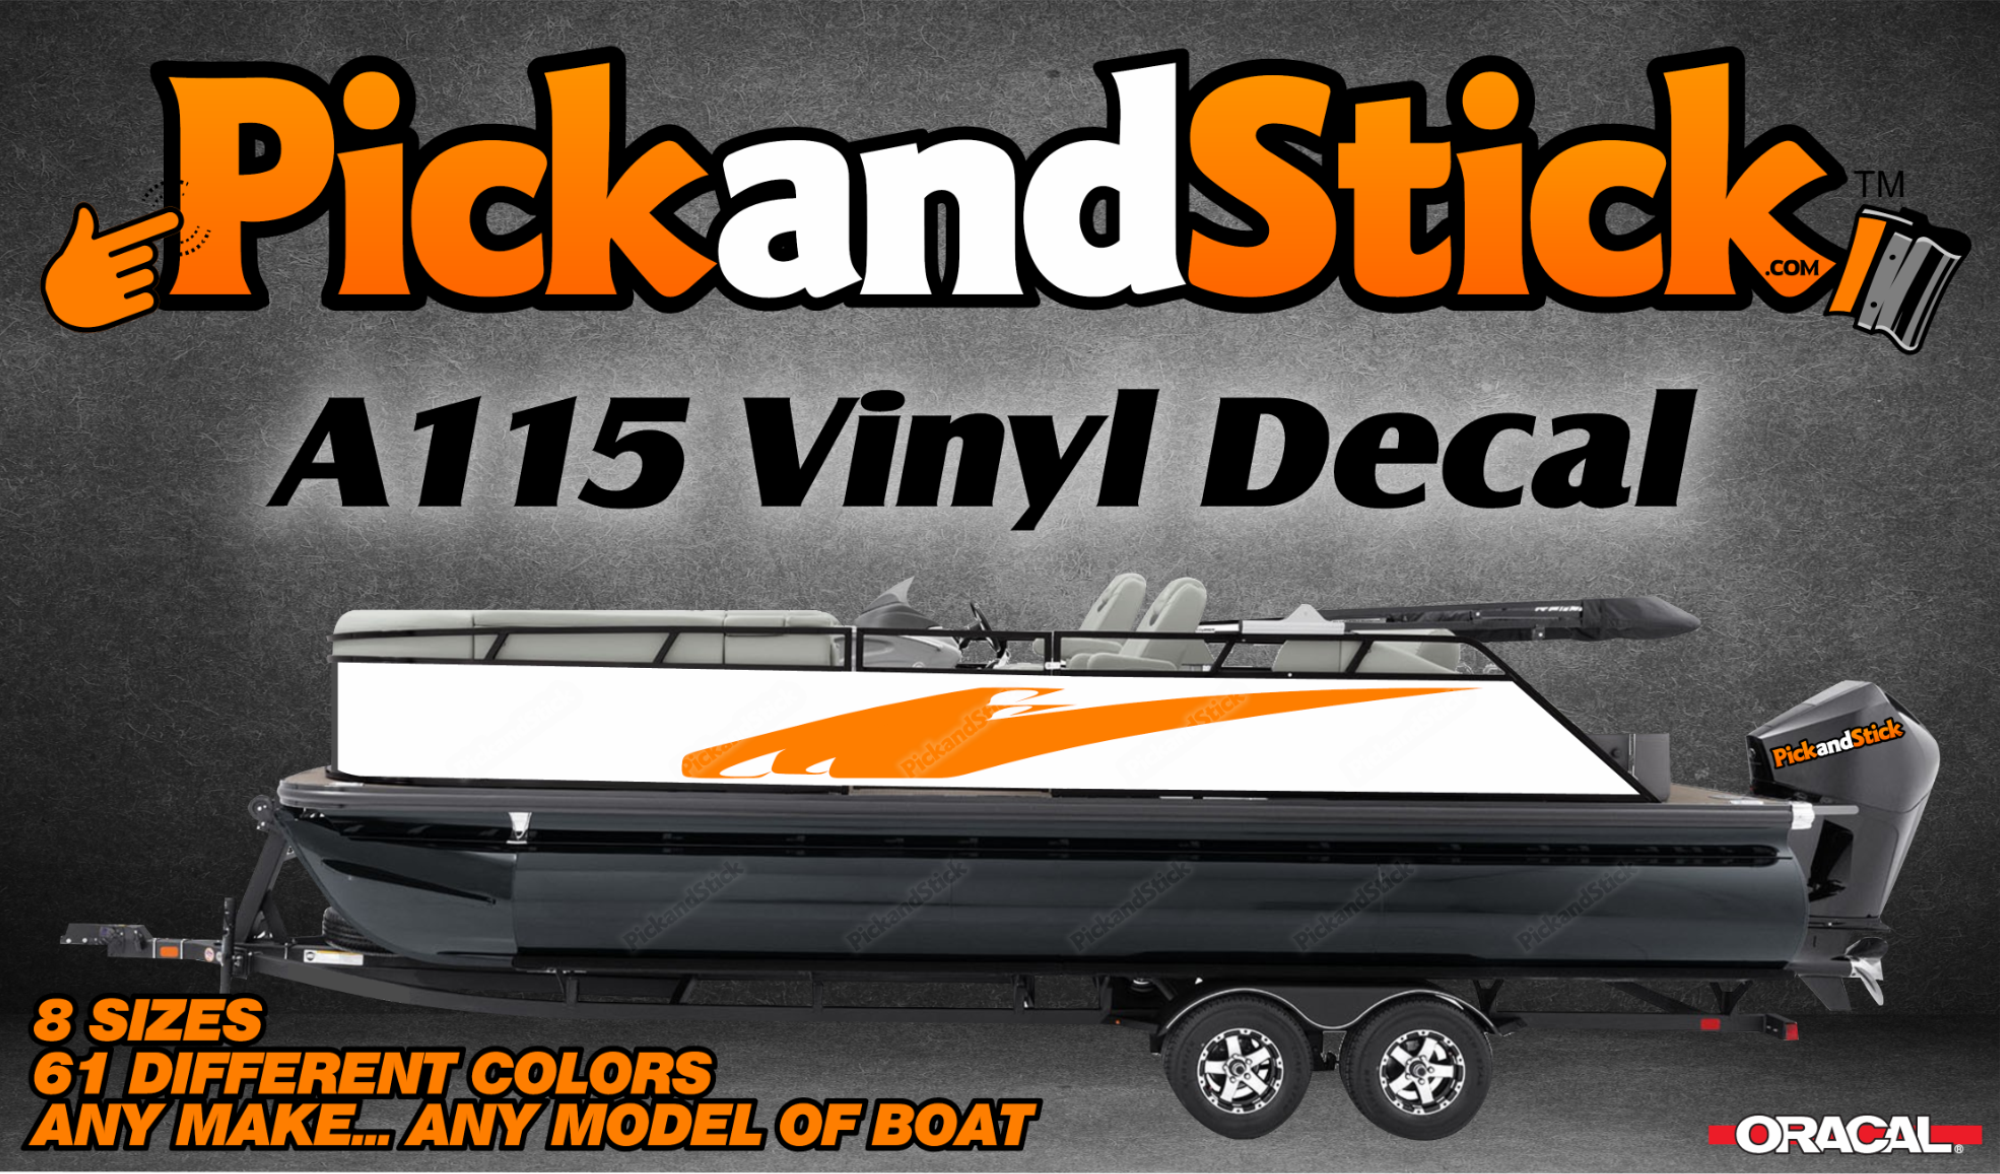 Boat Vinyl Decal A115 - PickandStickcom